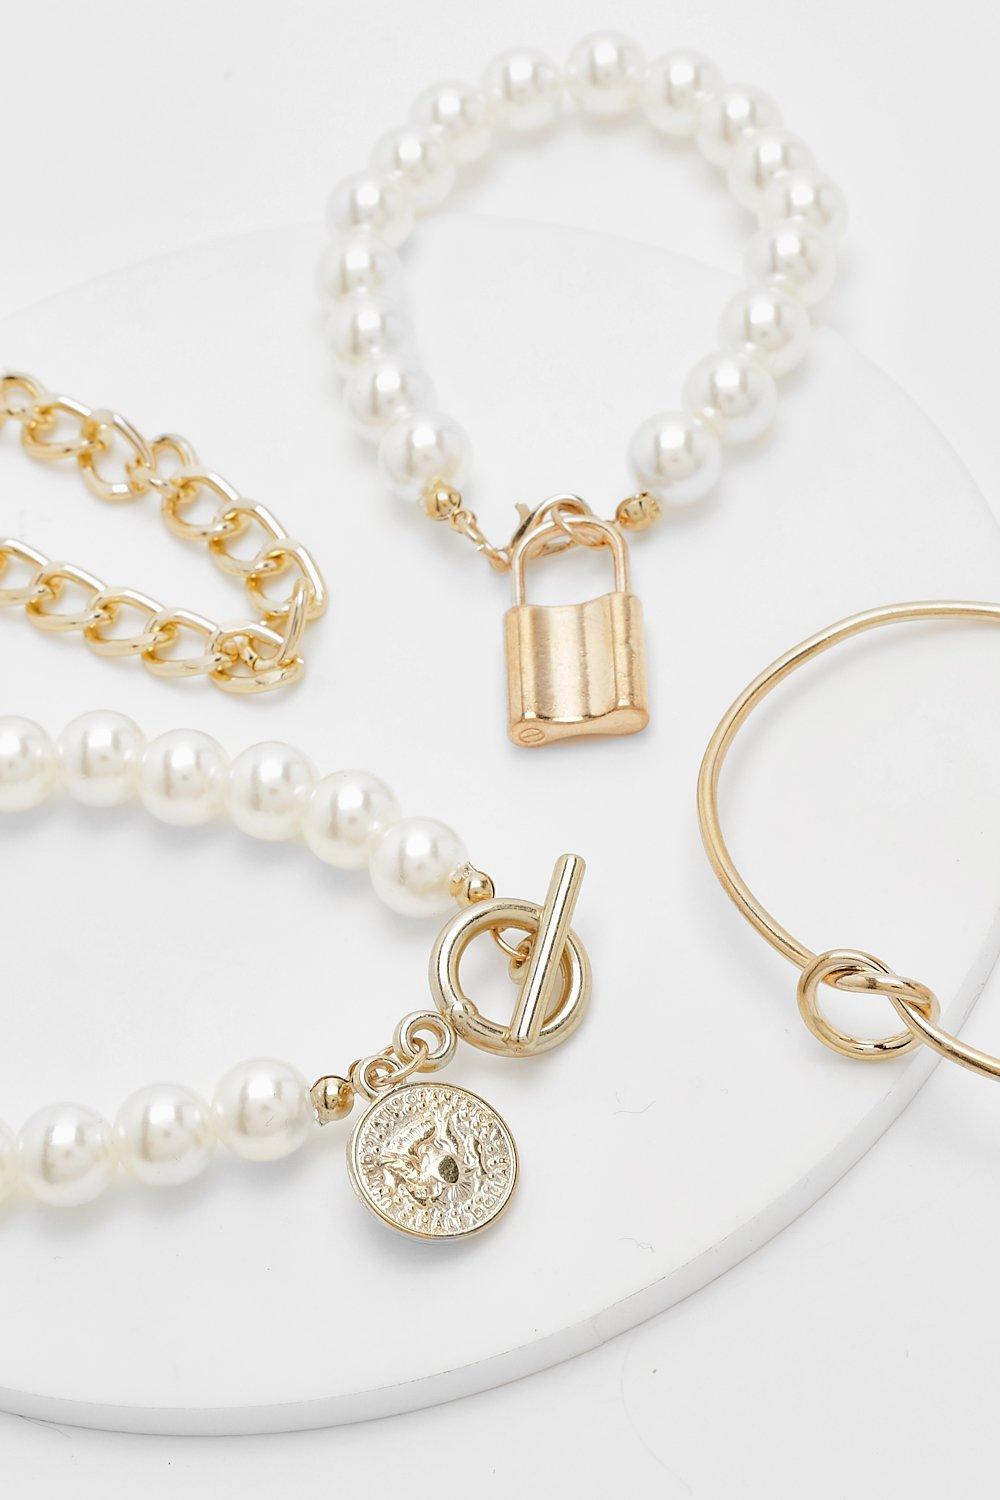 Image of Bracciali con perle e lucchetto - set di 2 paia, Metallics